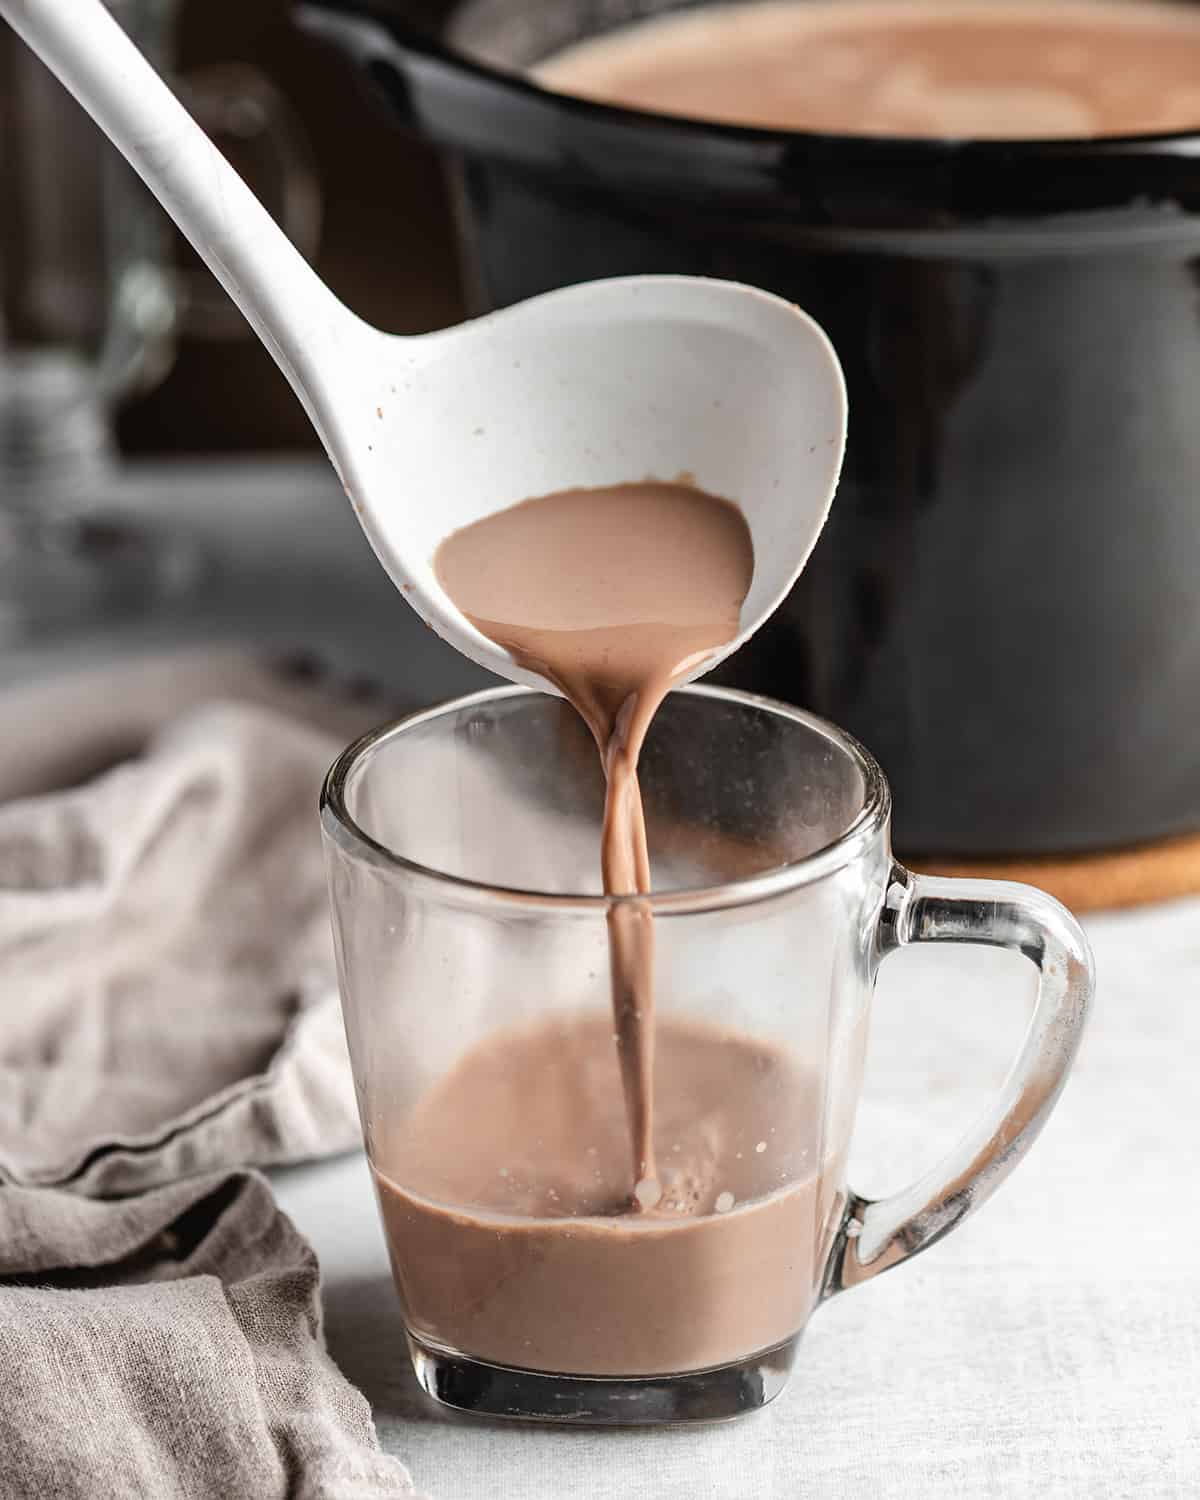 a ladle pouring Crockpot Hot Chocolate into a glass mug